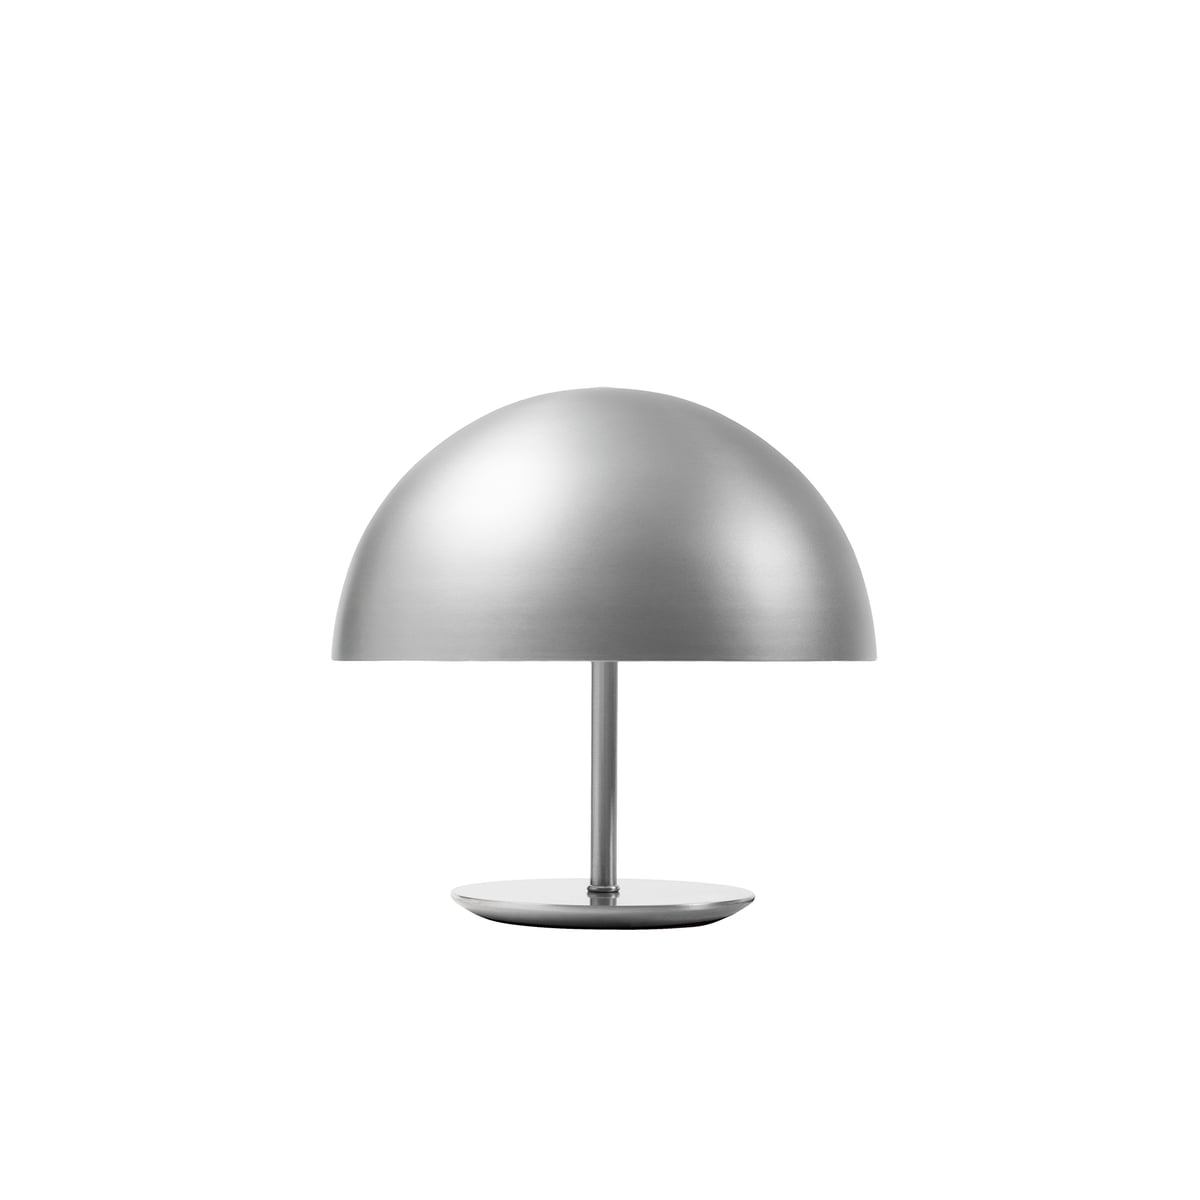 Mater - Dome Tischleuchte Ø 25 cm, Aluminium